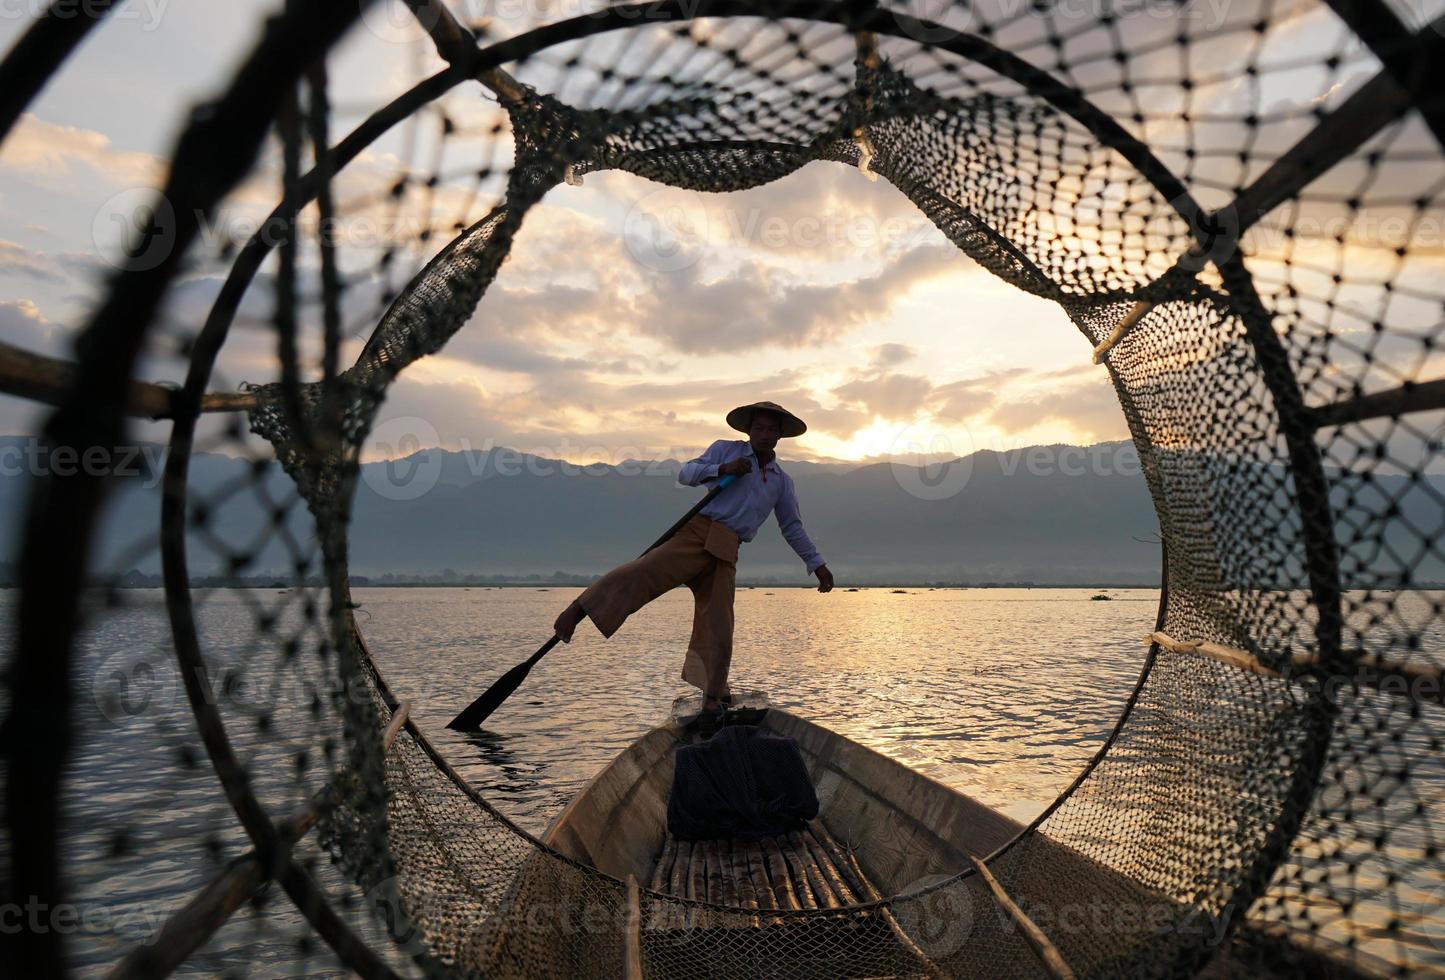 kijk door het vishok van een lokale visser die bij zonsopgang op de boot in het meer staat foto